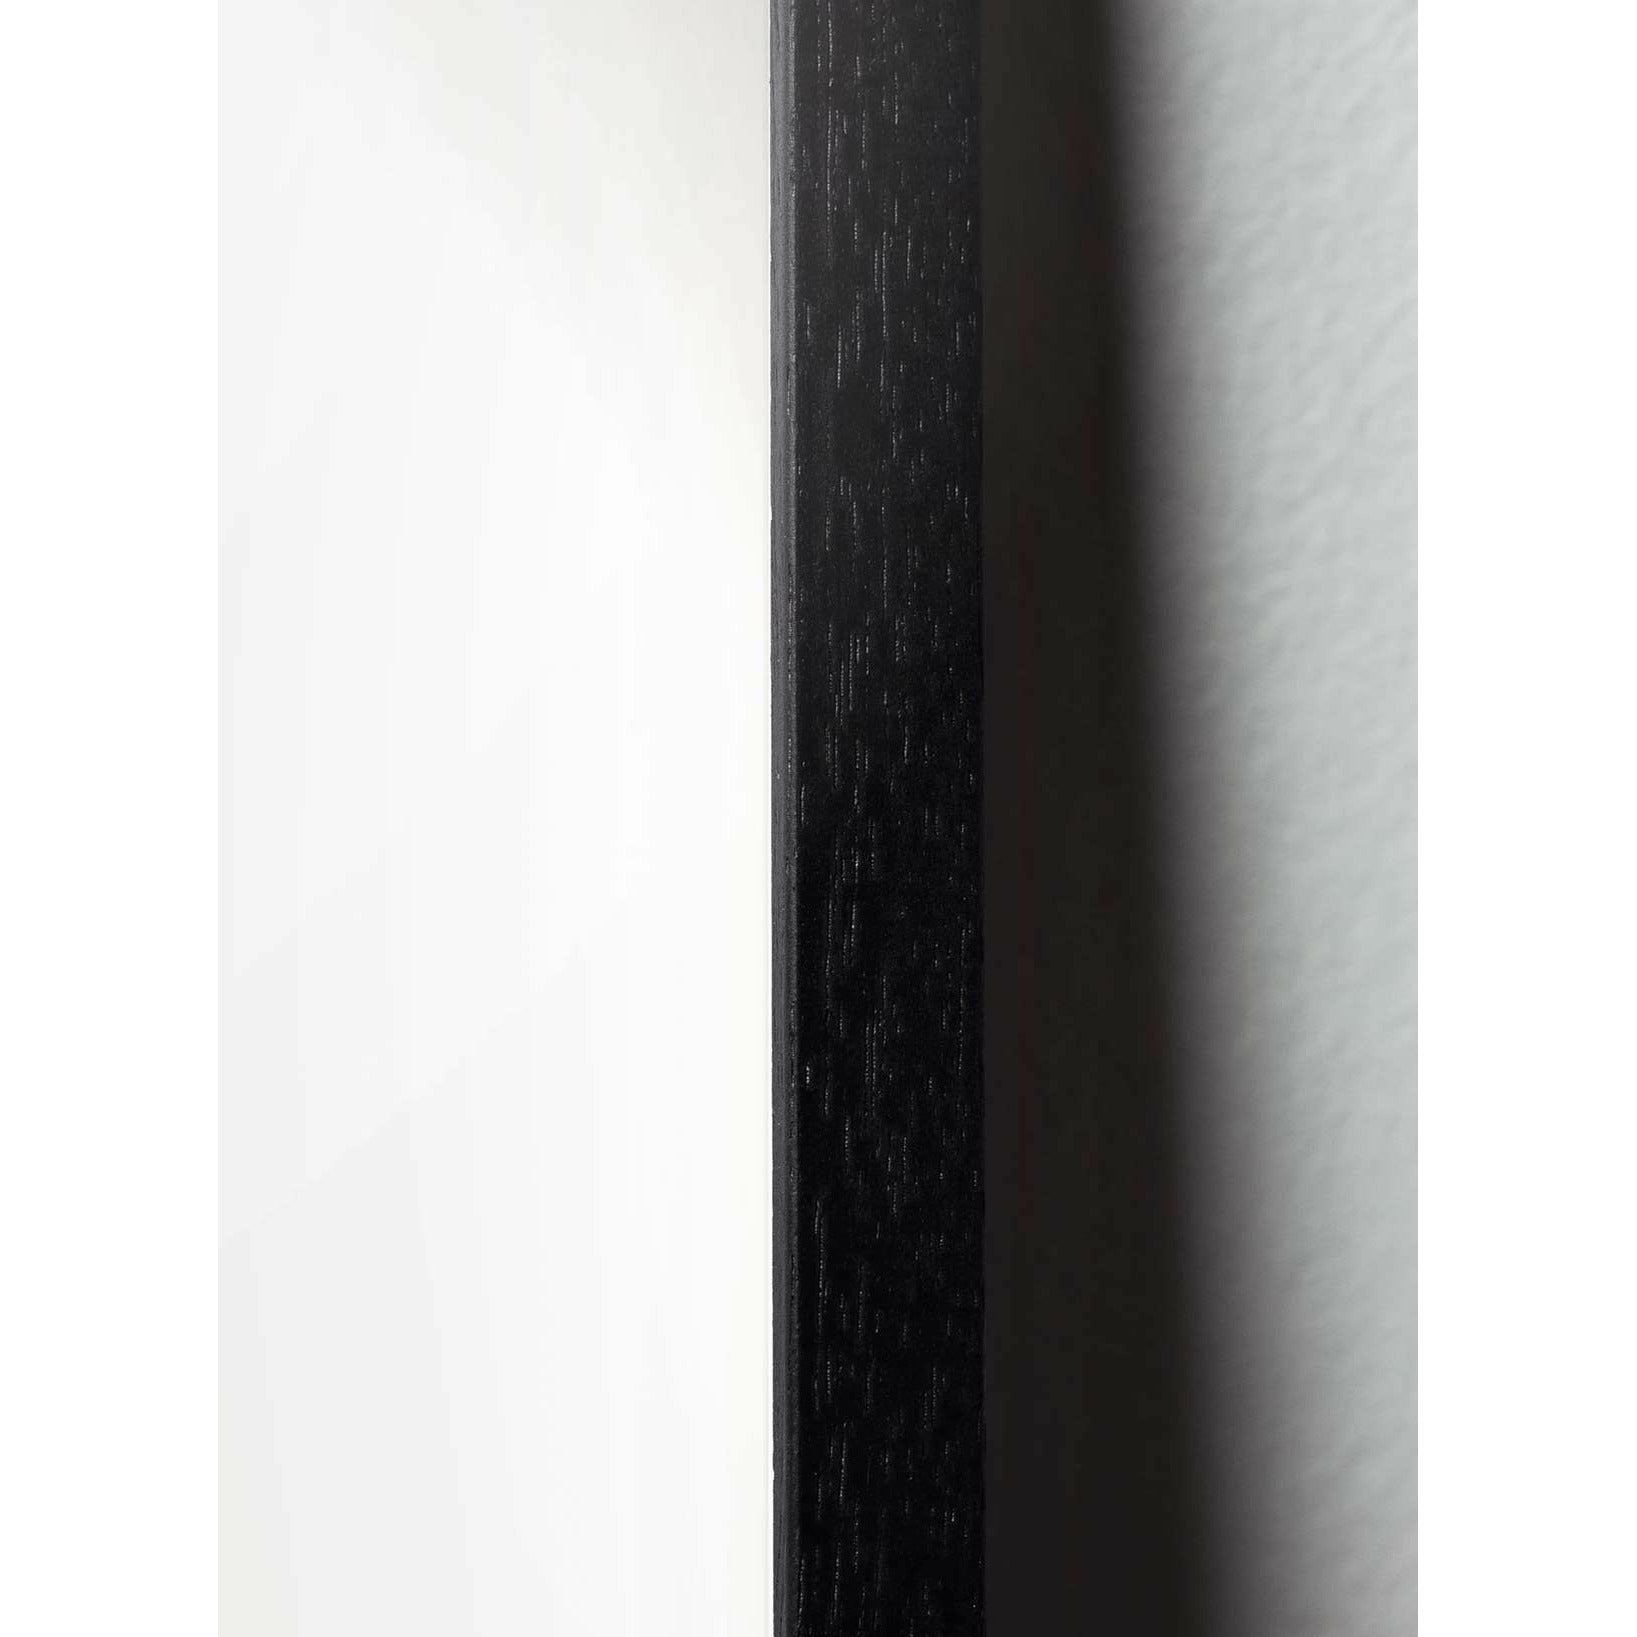 brainchild Snow -SoWrop -klassischer Poster, Rahmen im schwarz lackierten Holz 50x70 cm, grüner Hintergrund